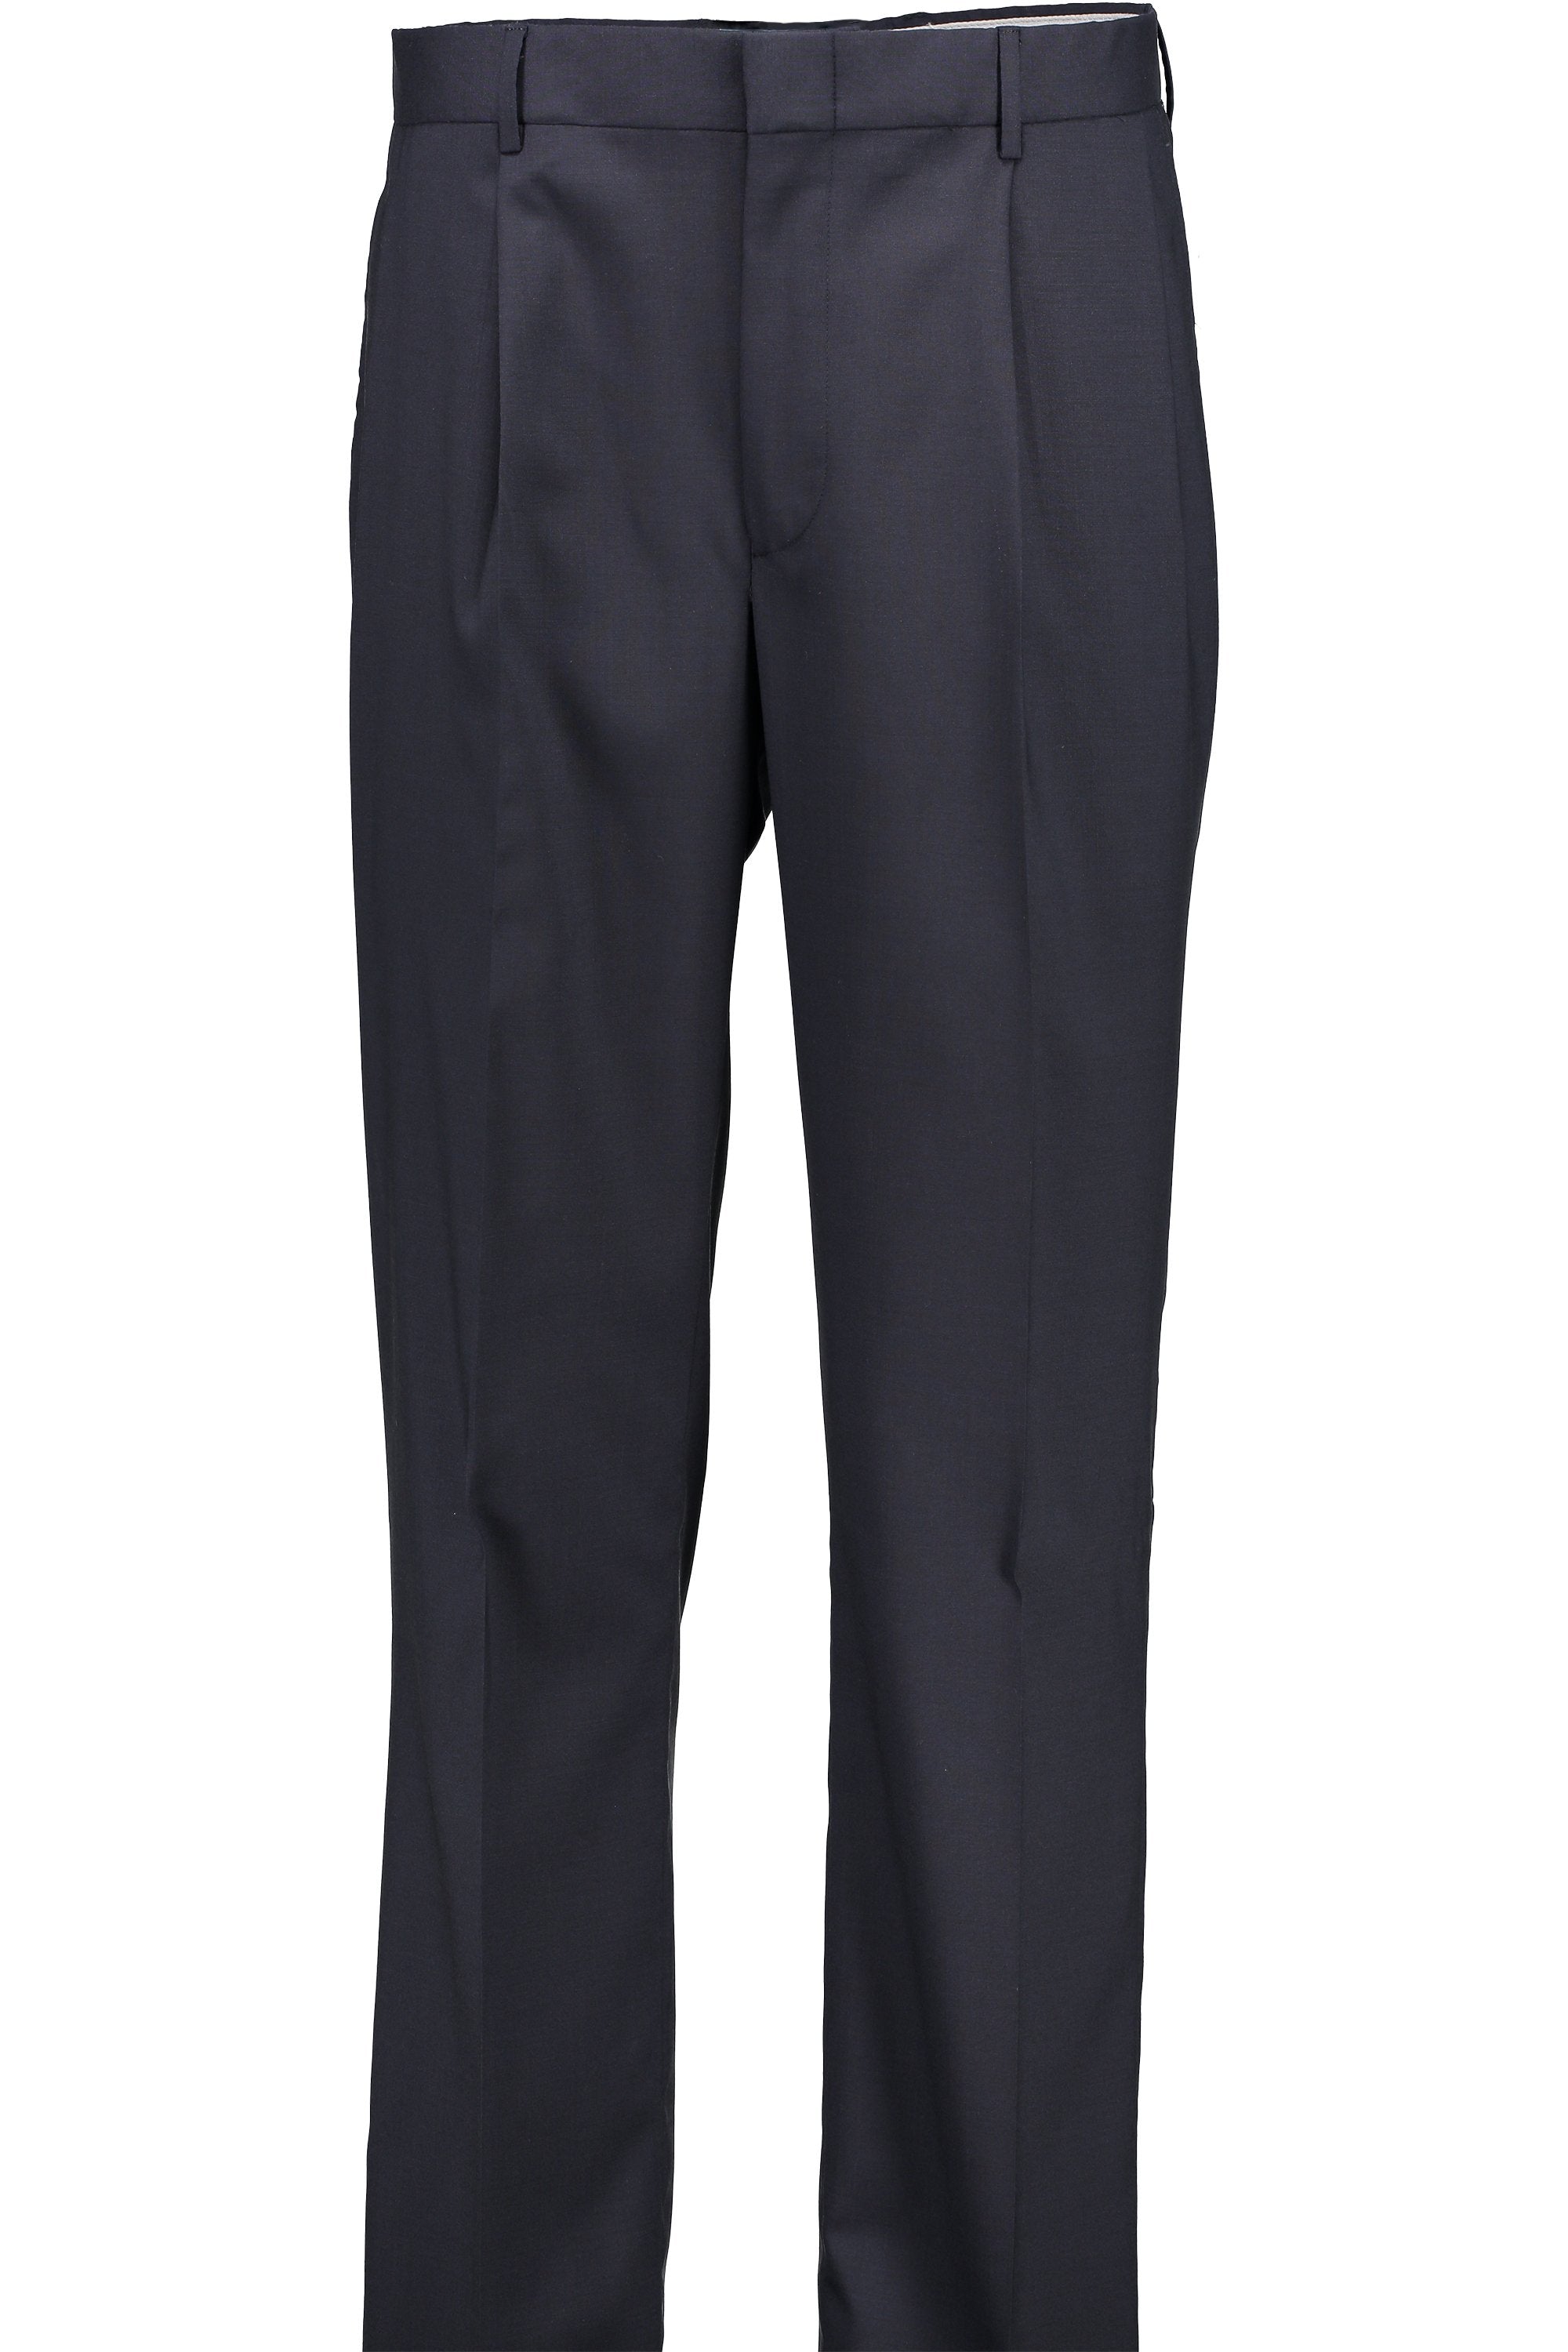 Men's Suit Separates Pleated Pant Classic Cut - NAVY 98/2 WOOL/LYCRA SUPER100